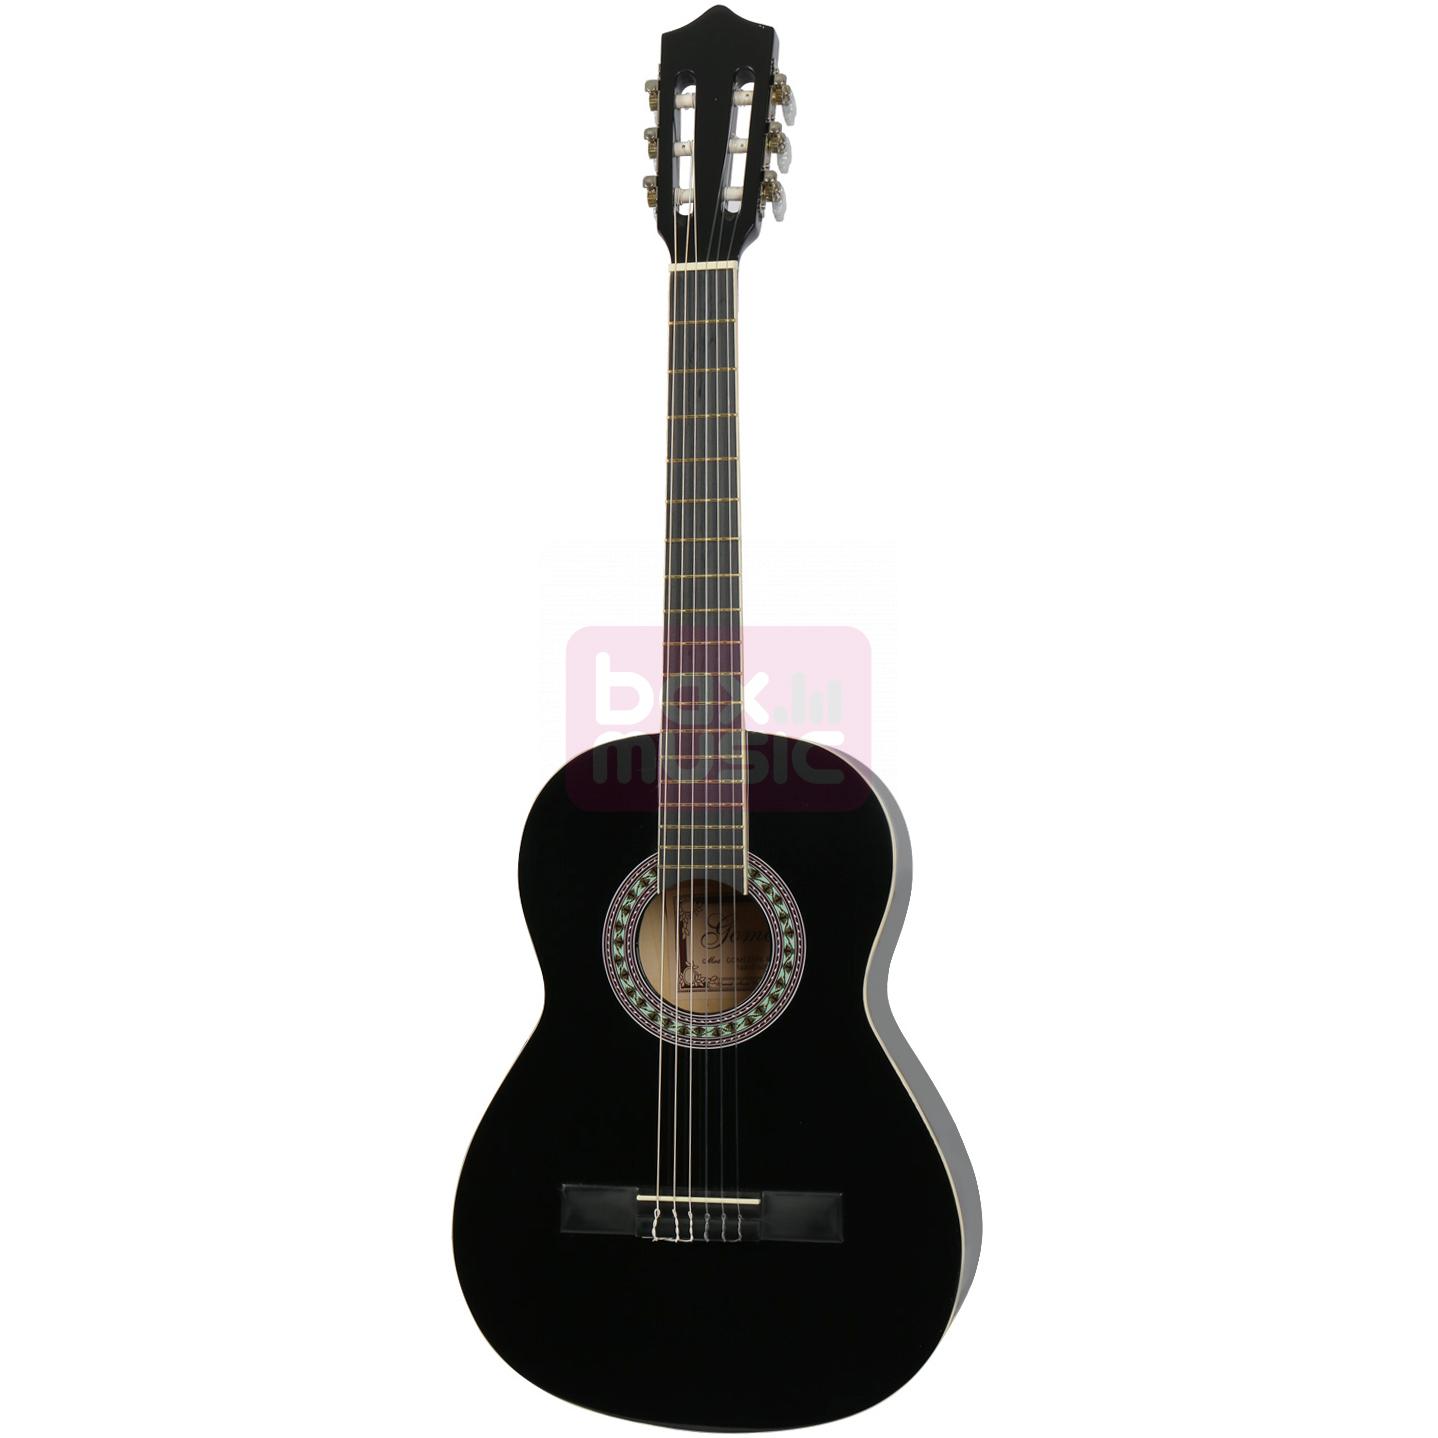 Gomez 036 3/4-model klassieke gitaar zwart